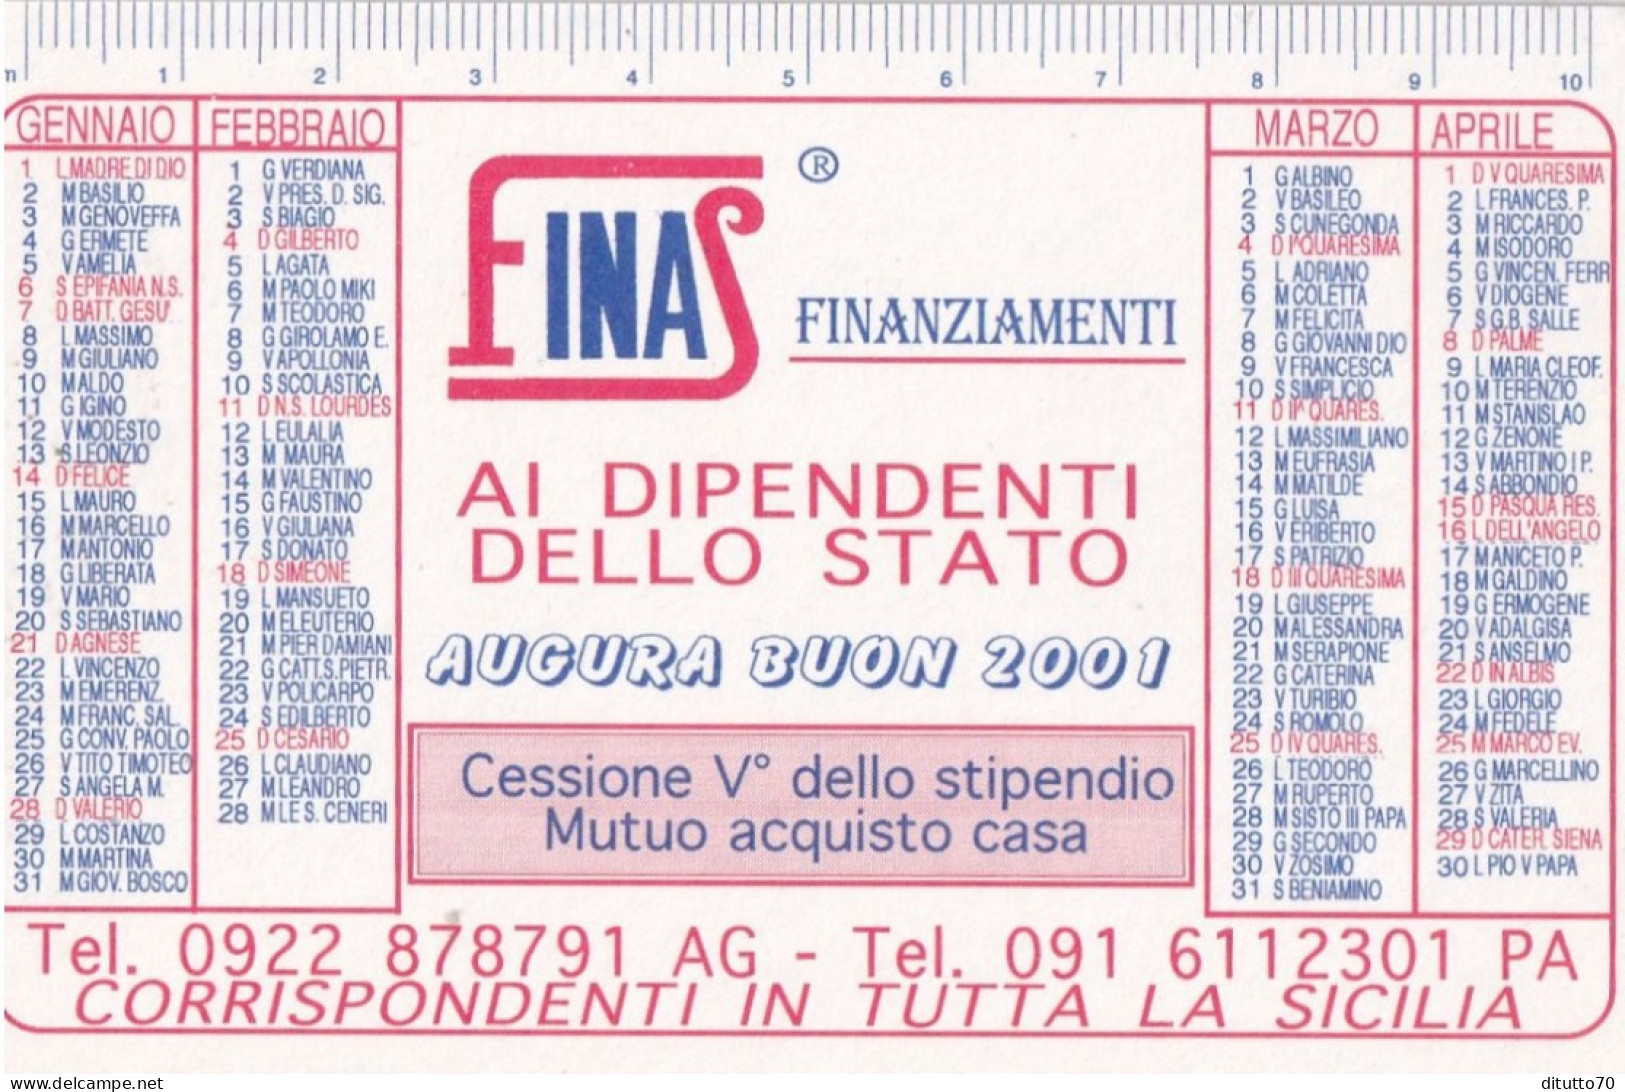 Calendarietto - Finas - Finanziamenti - Corrispondenti Per Tutta La Sicilia - Anno 2001 - Small : 2001-...